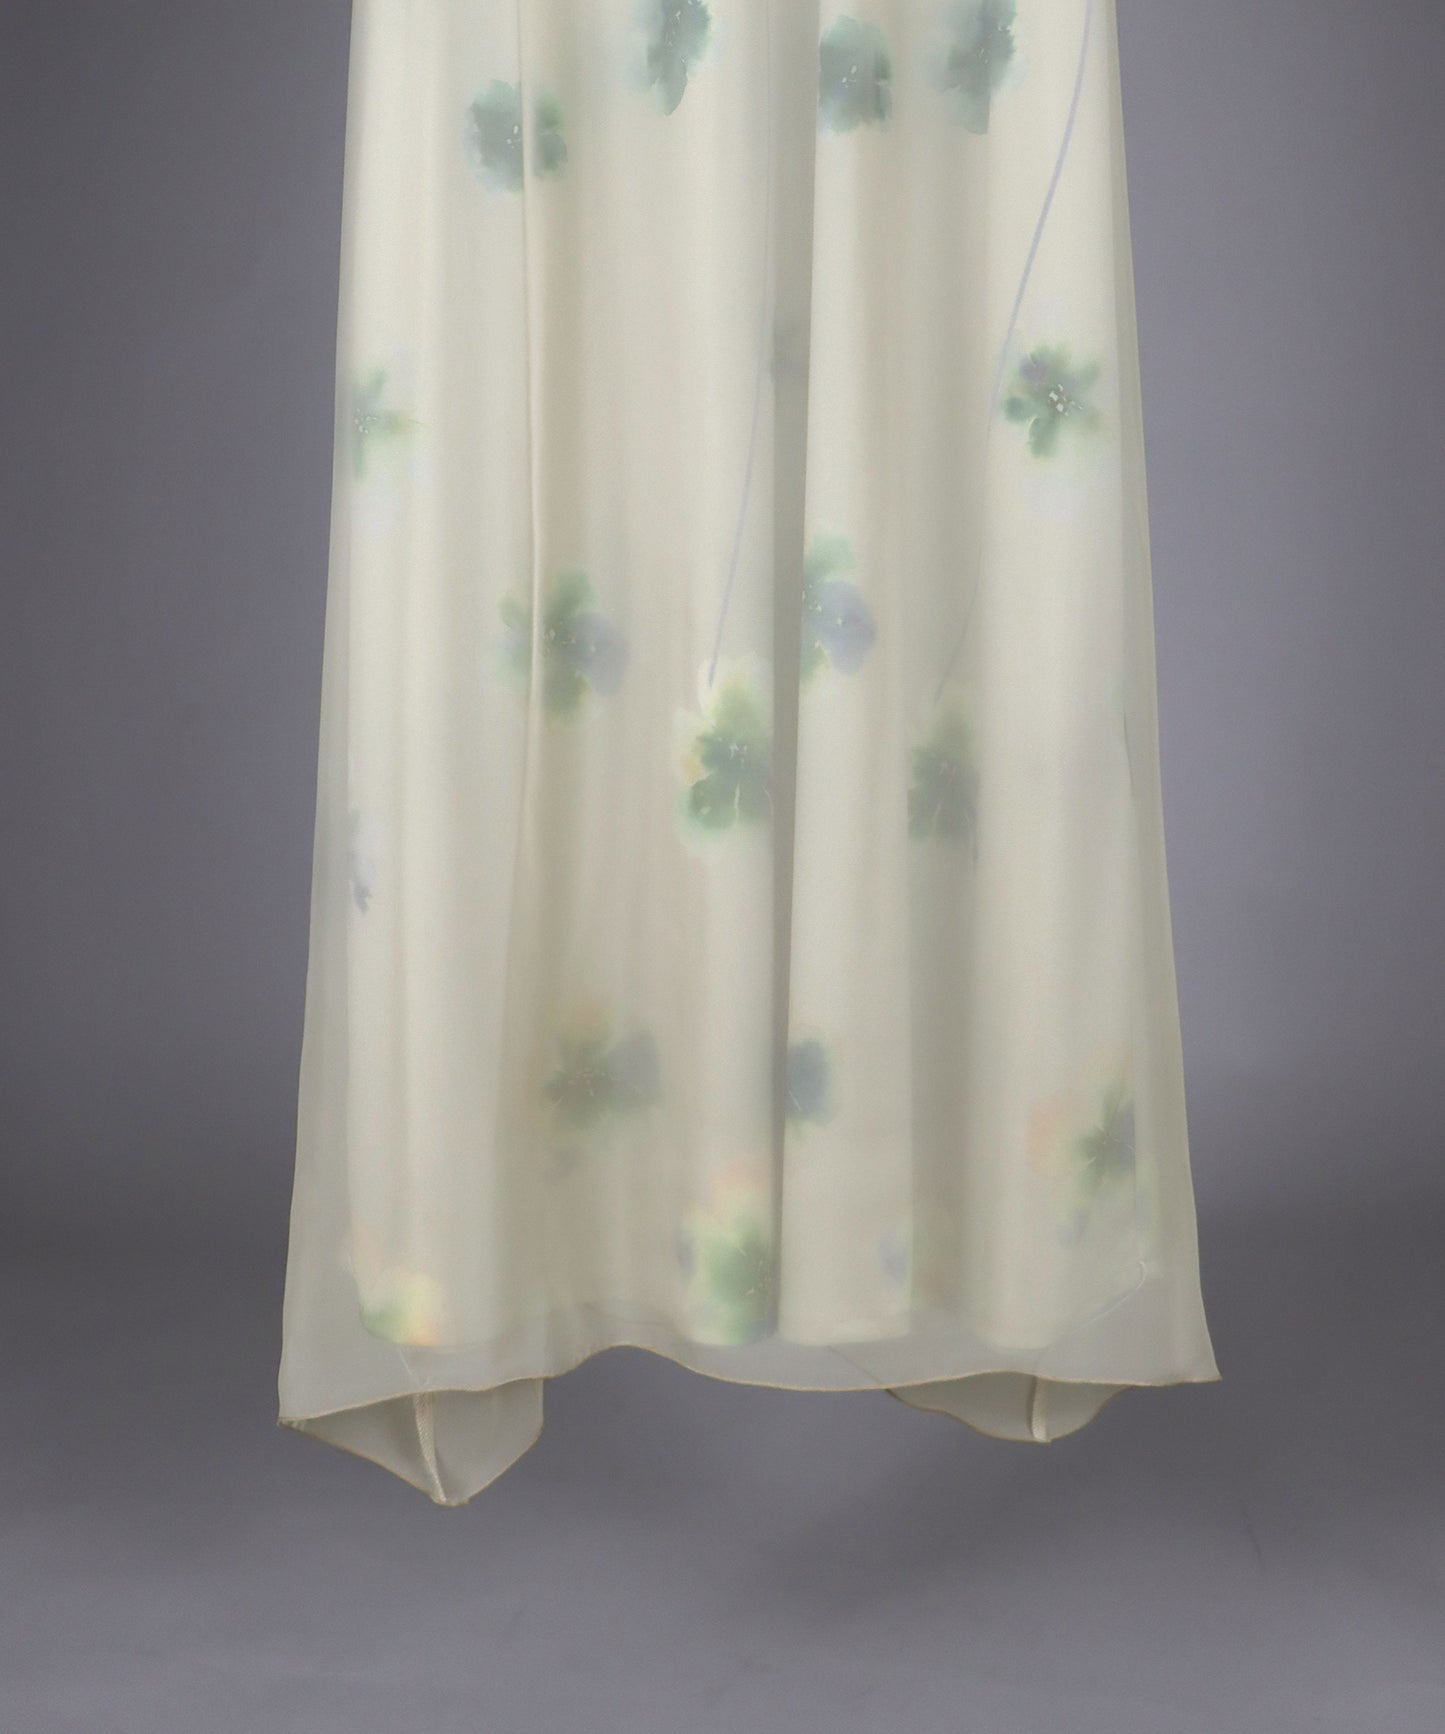 일본제 아트 플라워 프린트 민소매 드레스